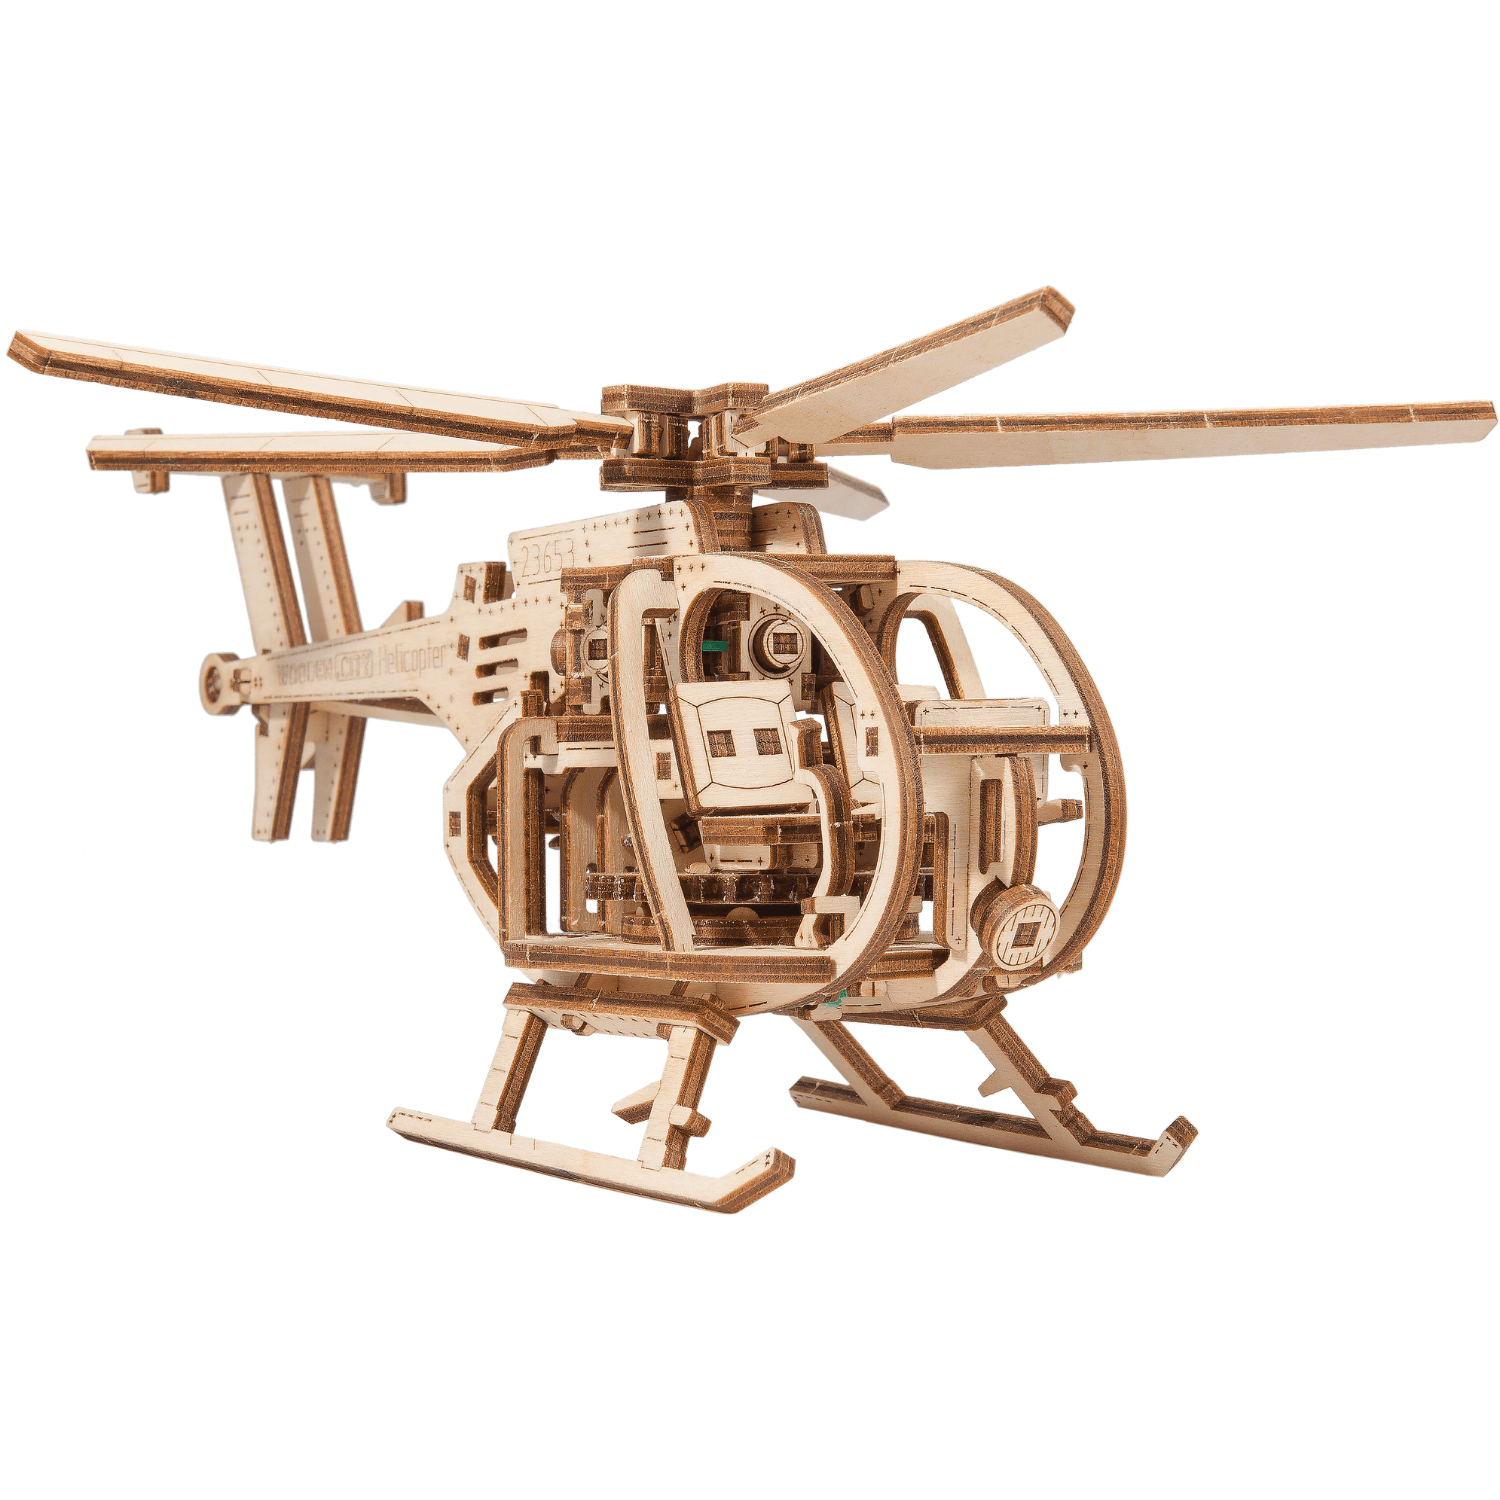 Helikopter Mechanische Houten Puzzel - HoutenStad-